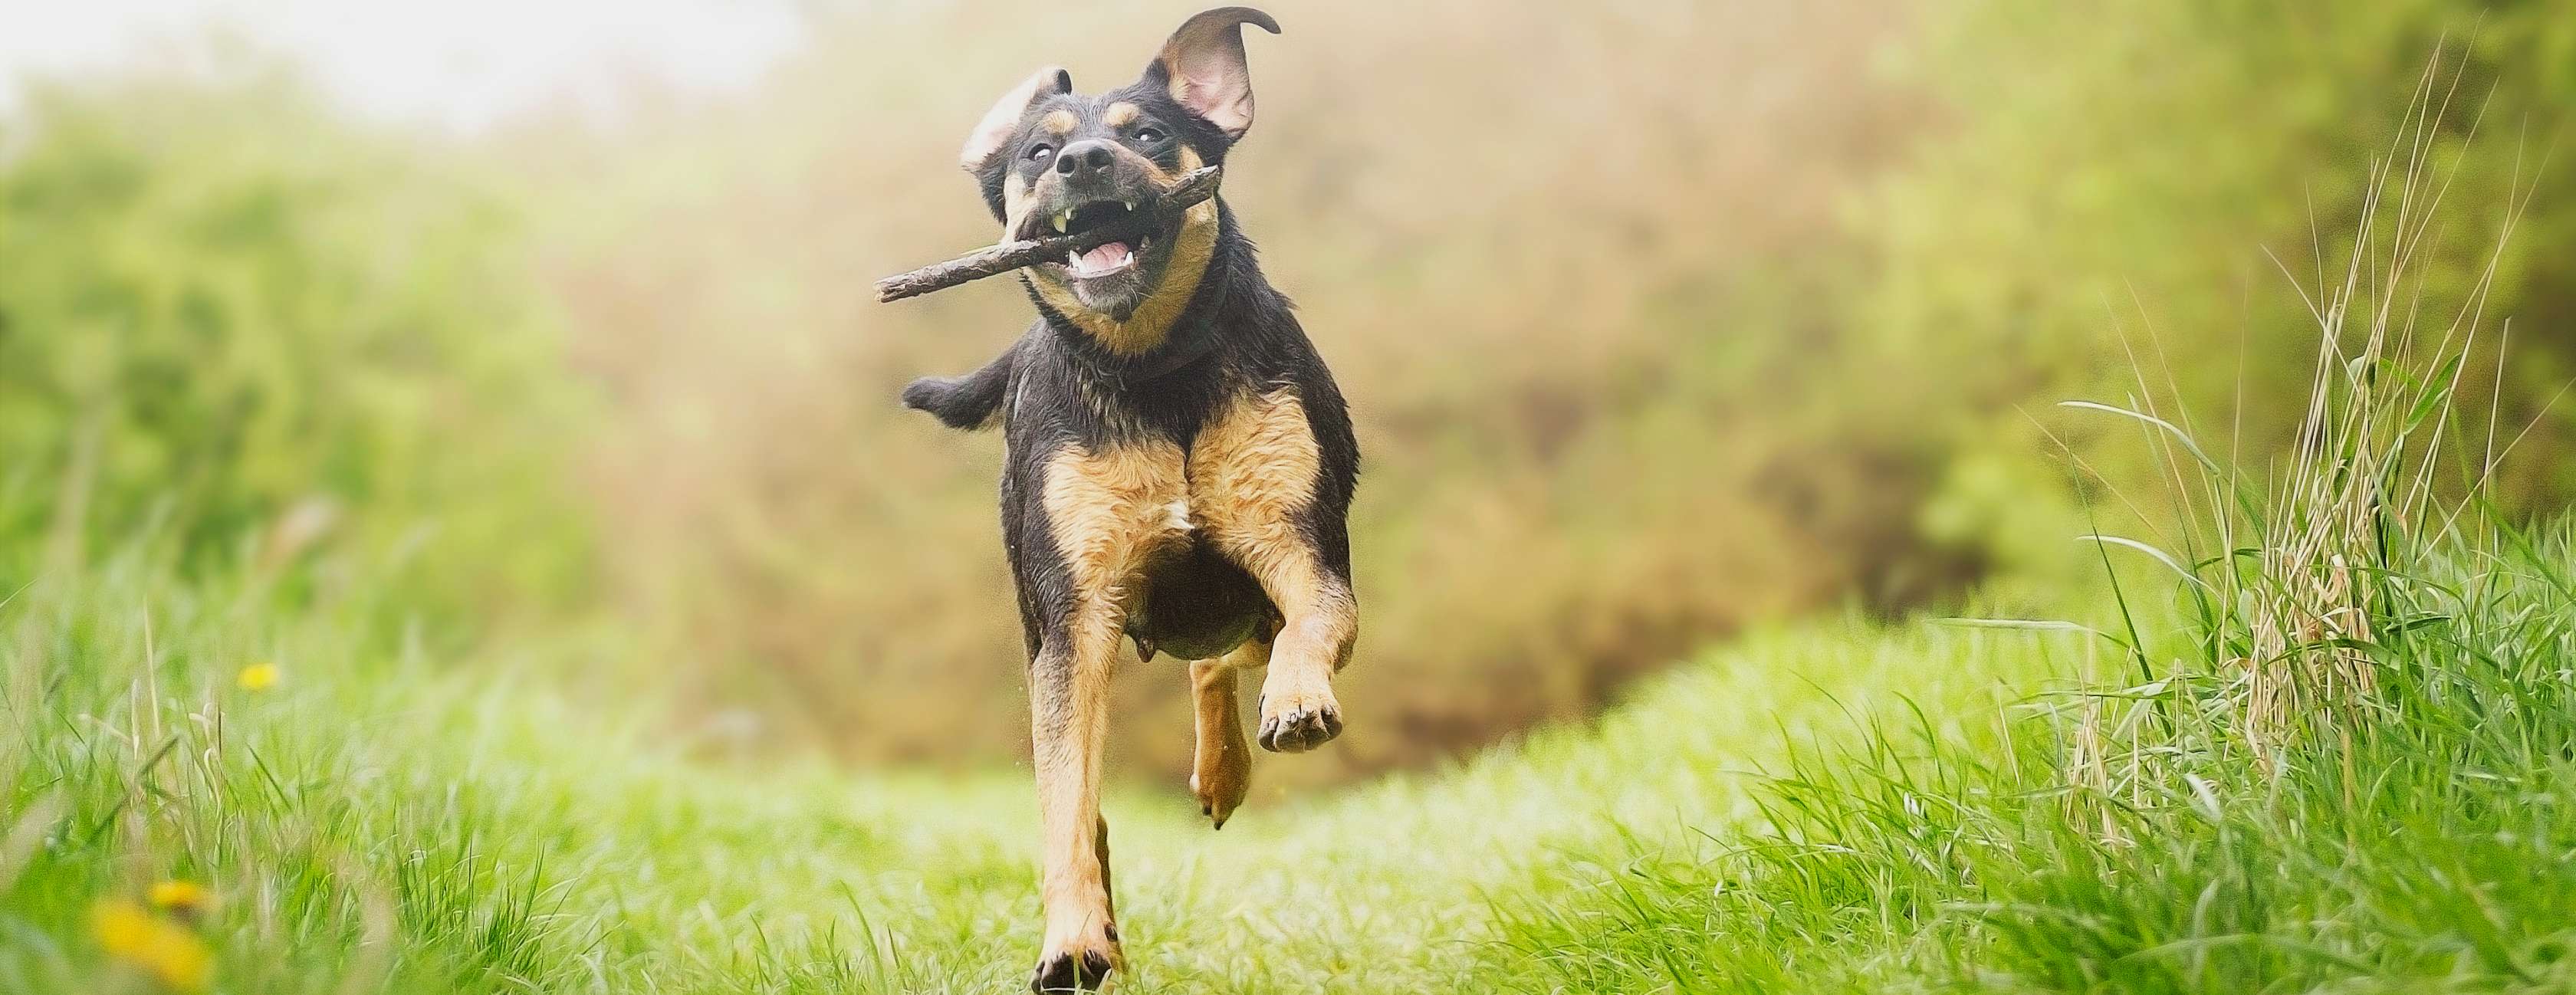 Artgerechte Haltung: Das sollten Sie beachten: Hund mit Stock im Maul rennt über eine Wiese